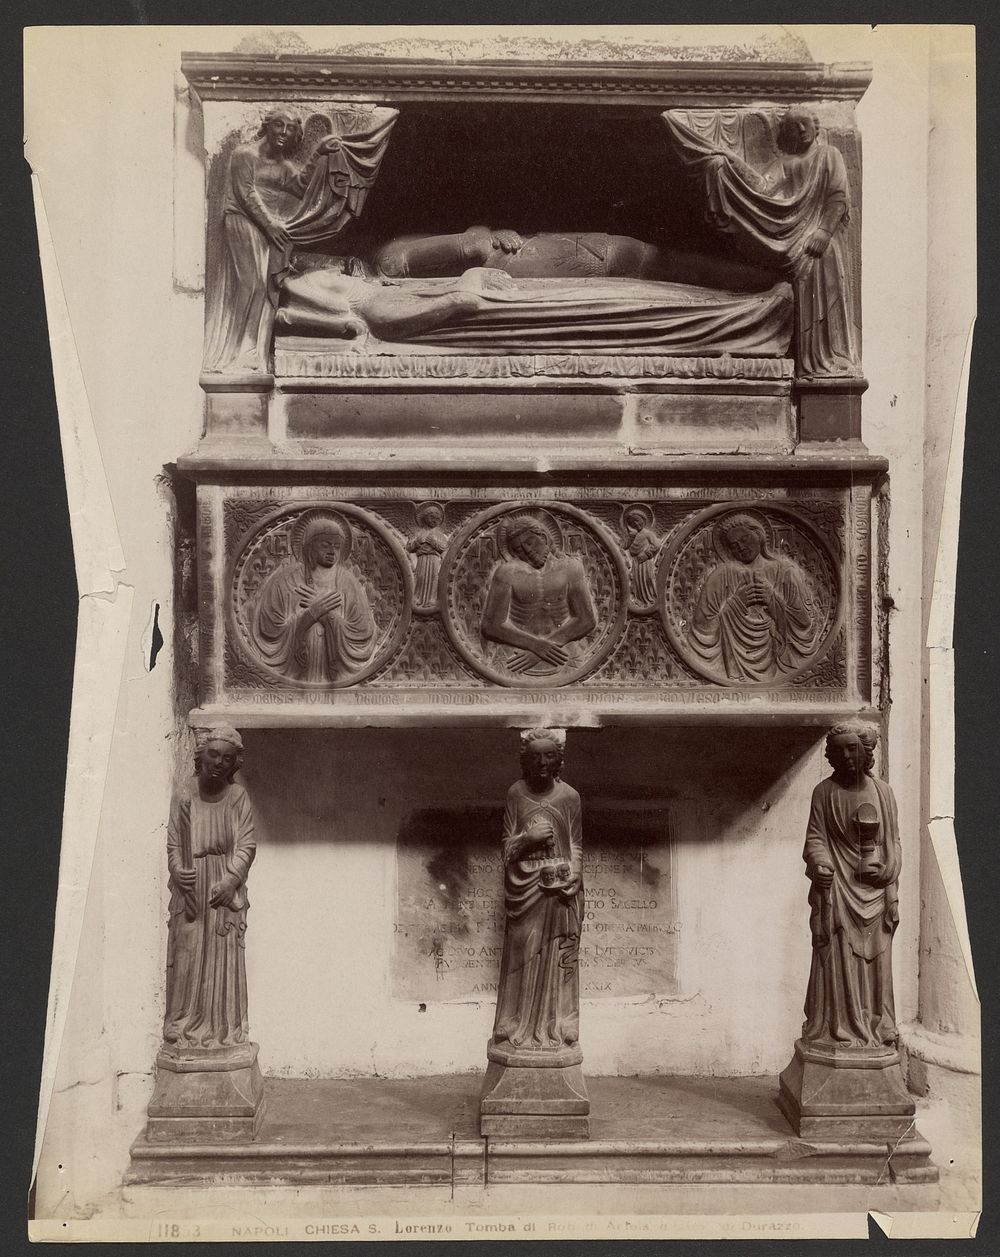 Napoli, Chiesa S. Lorenzo, Tomba di Robert di Artois e [Joanna of Anjou]-Durazzo